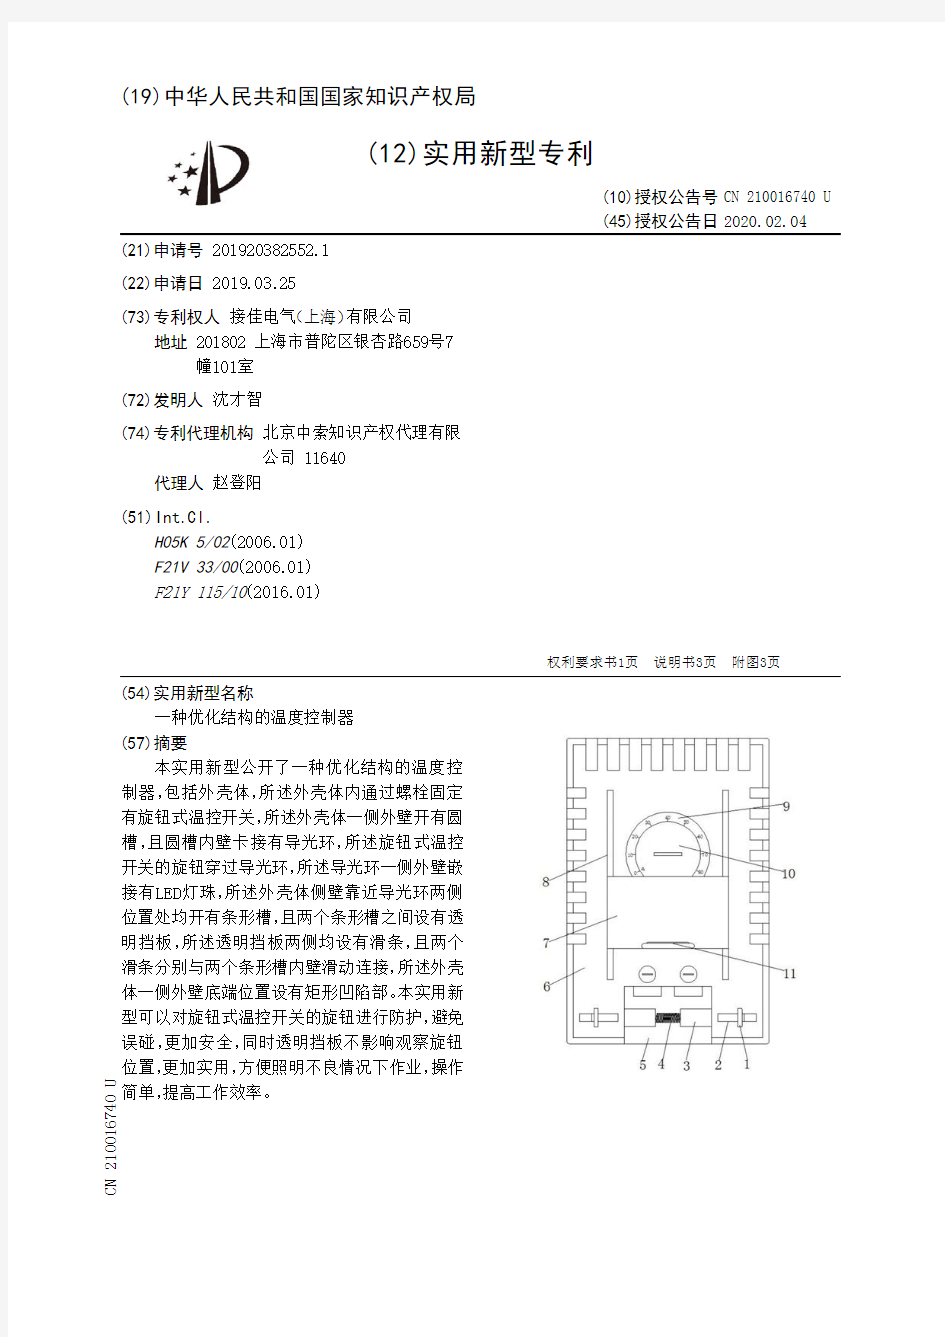 【CN210016740U】一种优化结构的温度控制器【专利】